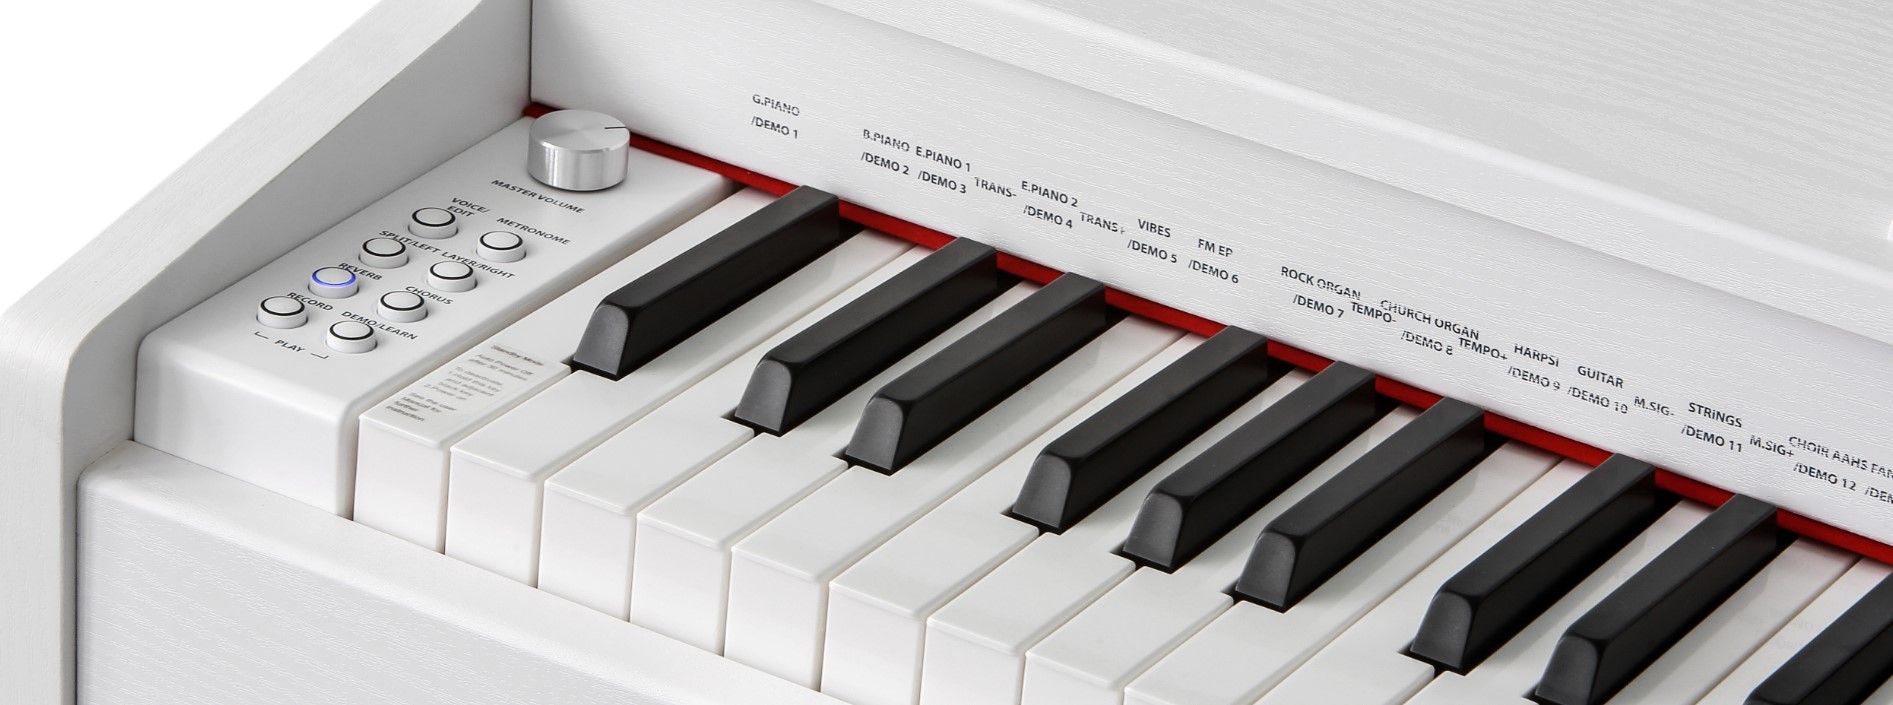  hrací digitální piano kurzweil M70 wh připojení sluchátek výborný poměr cena kvalita snadné ovládání usb port midi automatické doprovody